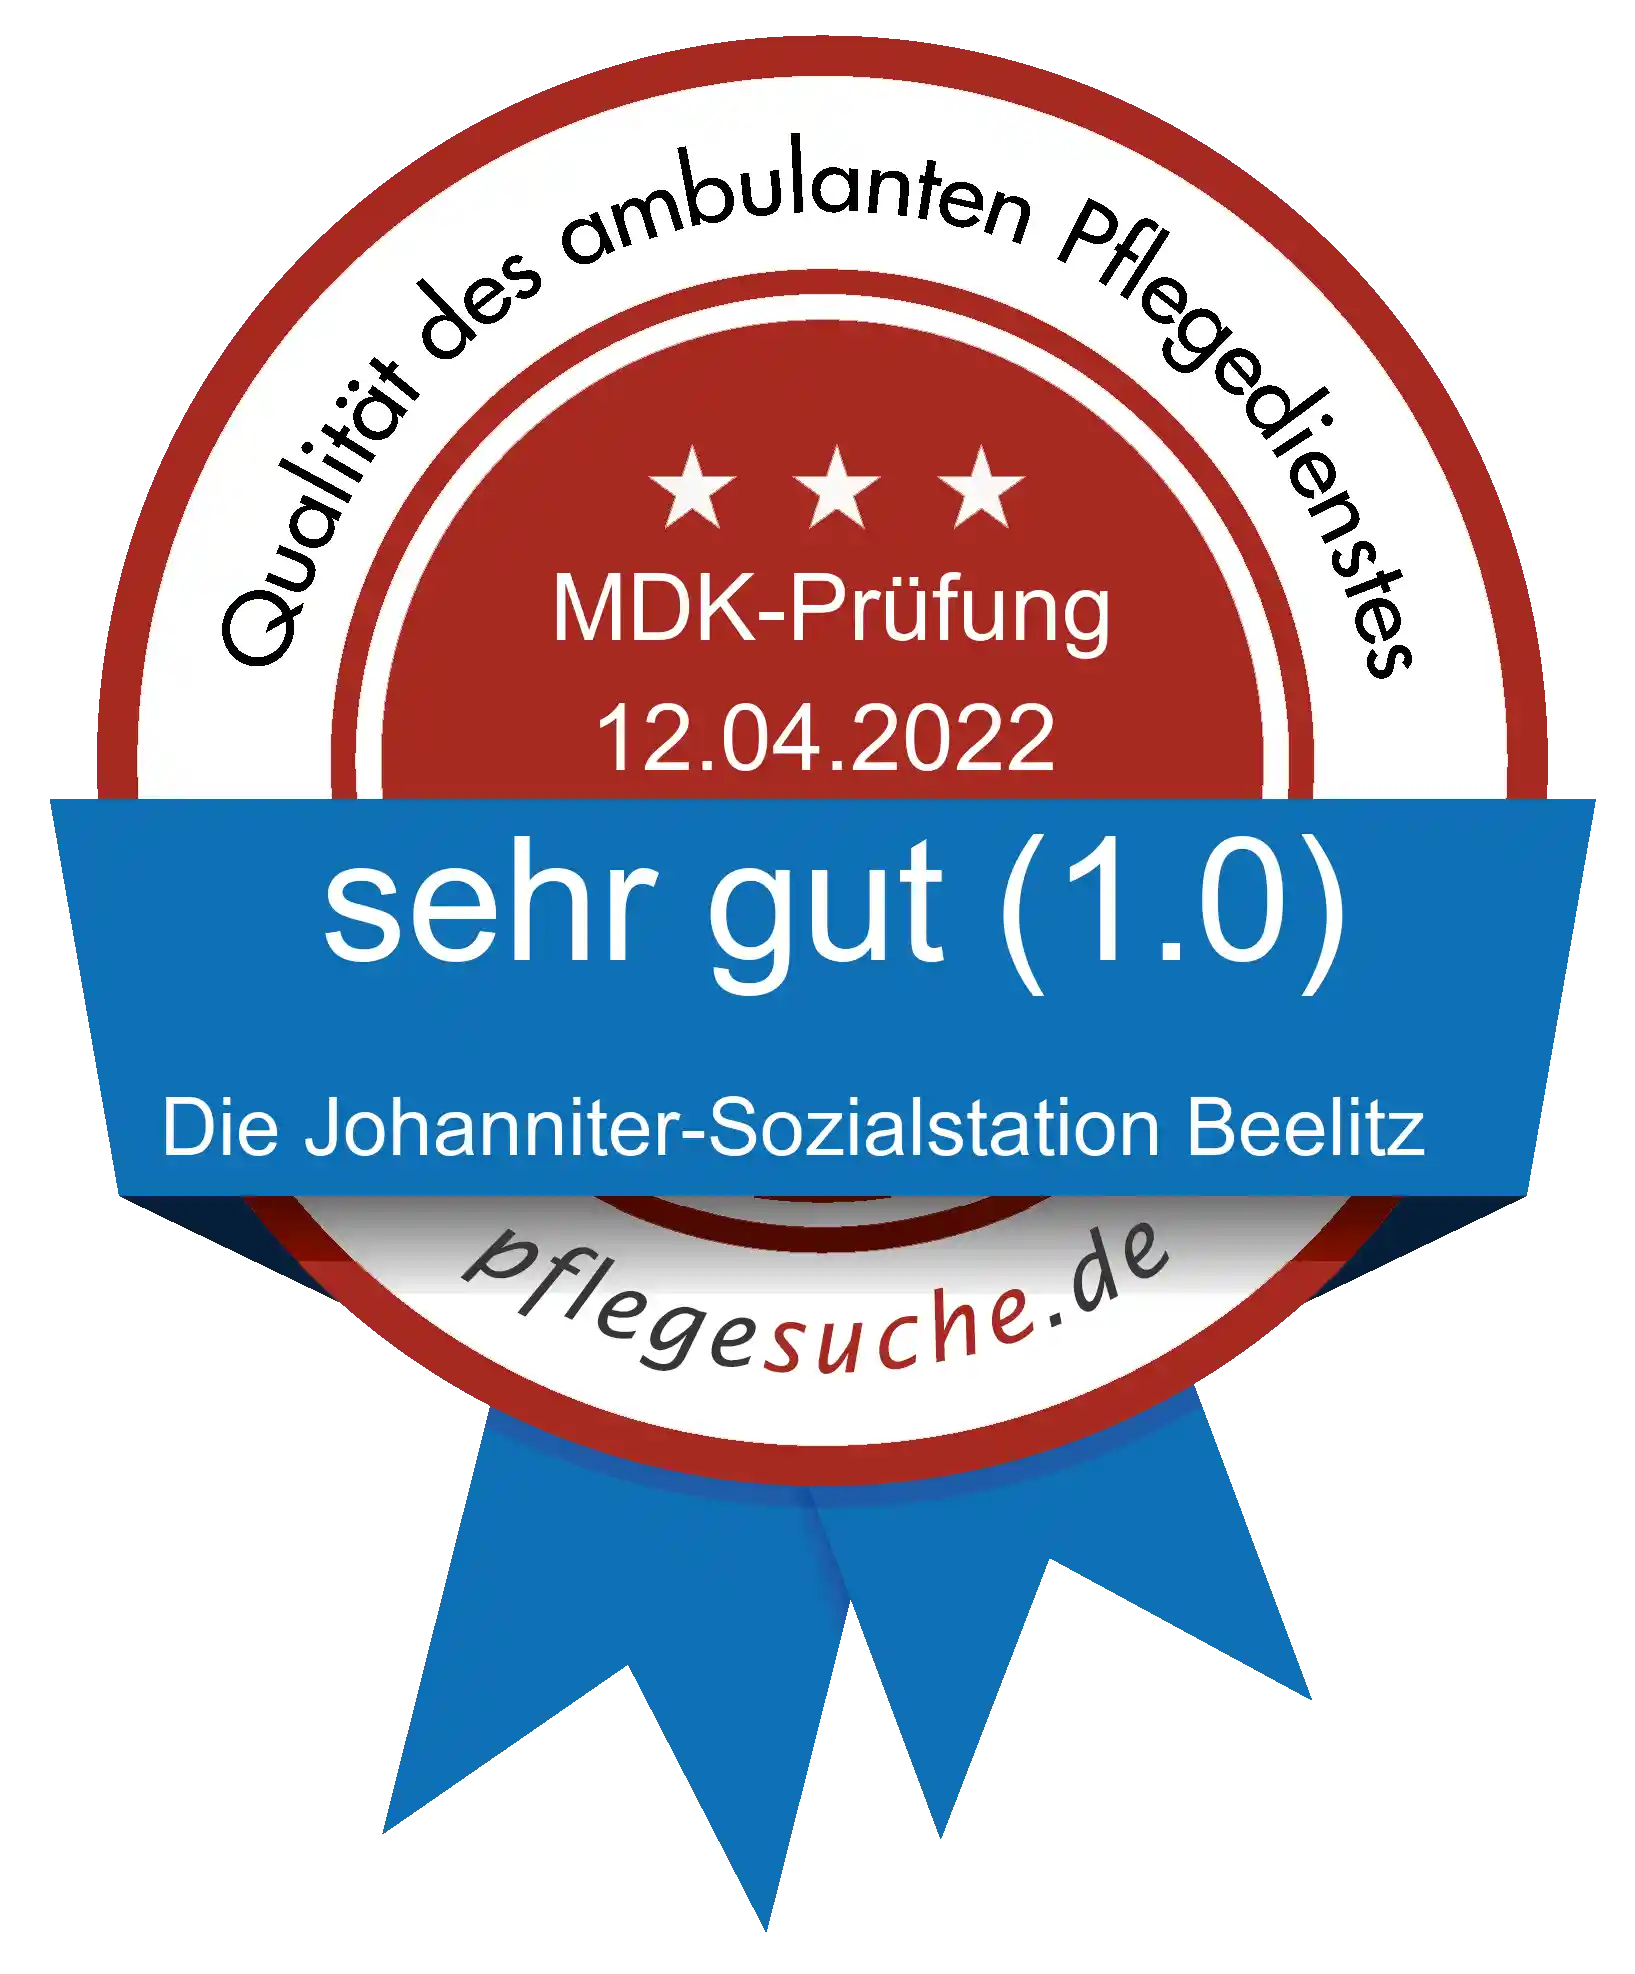 Siegel Benotung: Die Johanniter-Sozialstation Beelitz